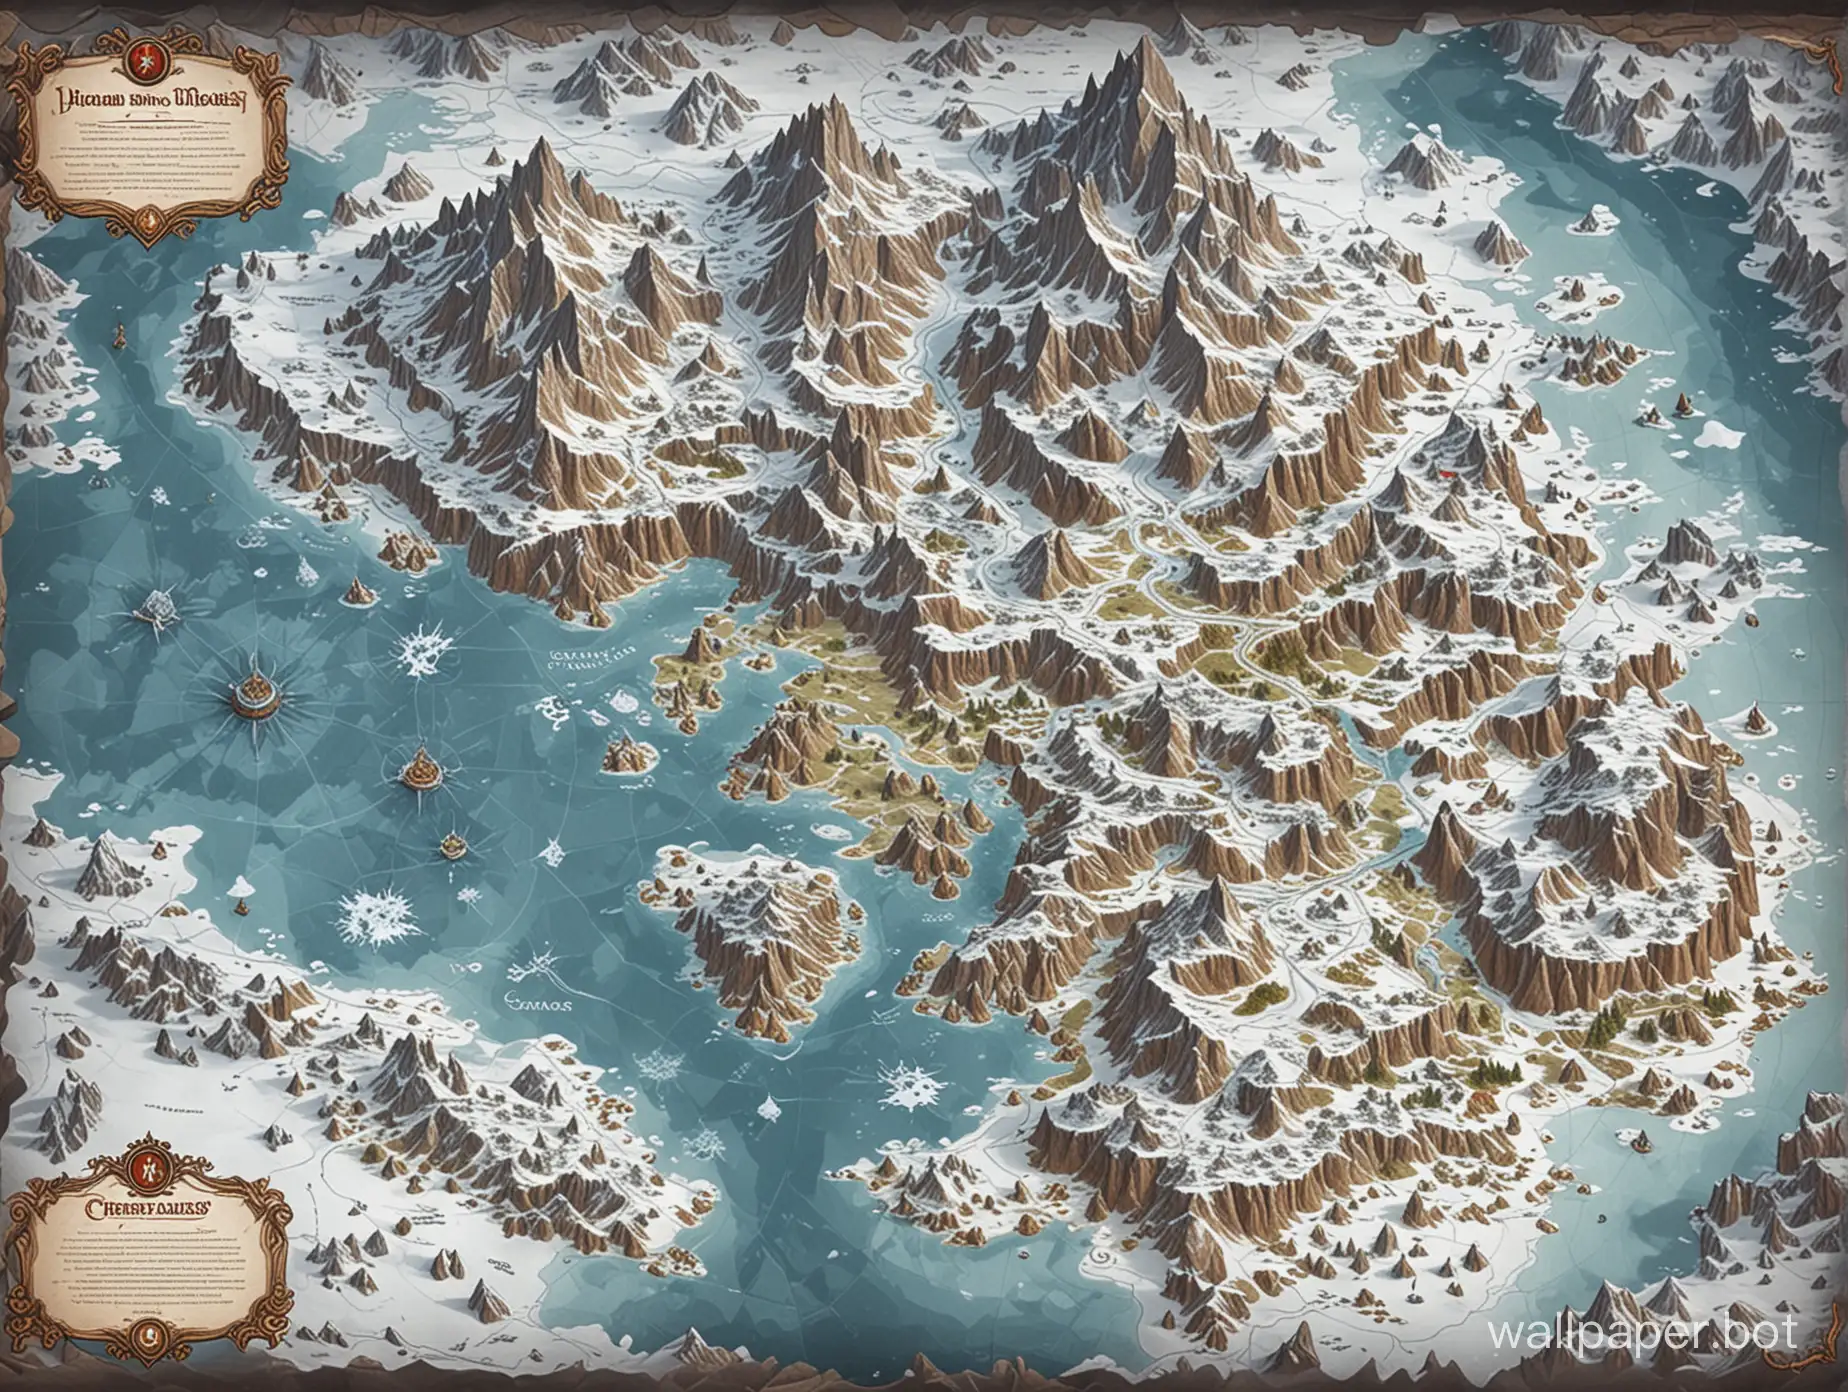 Карта фэнтези мира в стиле dungeons of dragons, локации с разным ландшафтом и климатом, отдельная локация со снегом и ледниками
